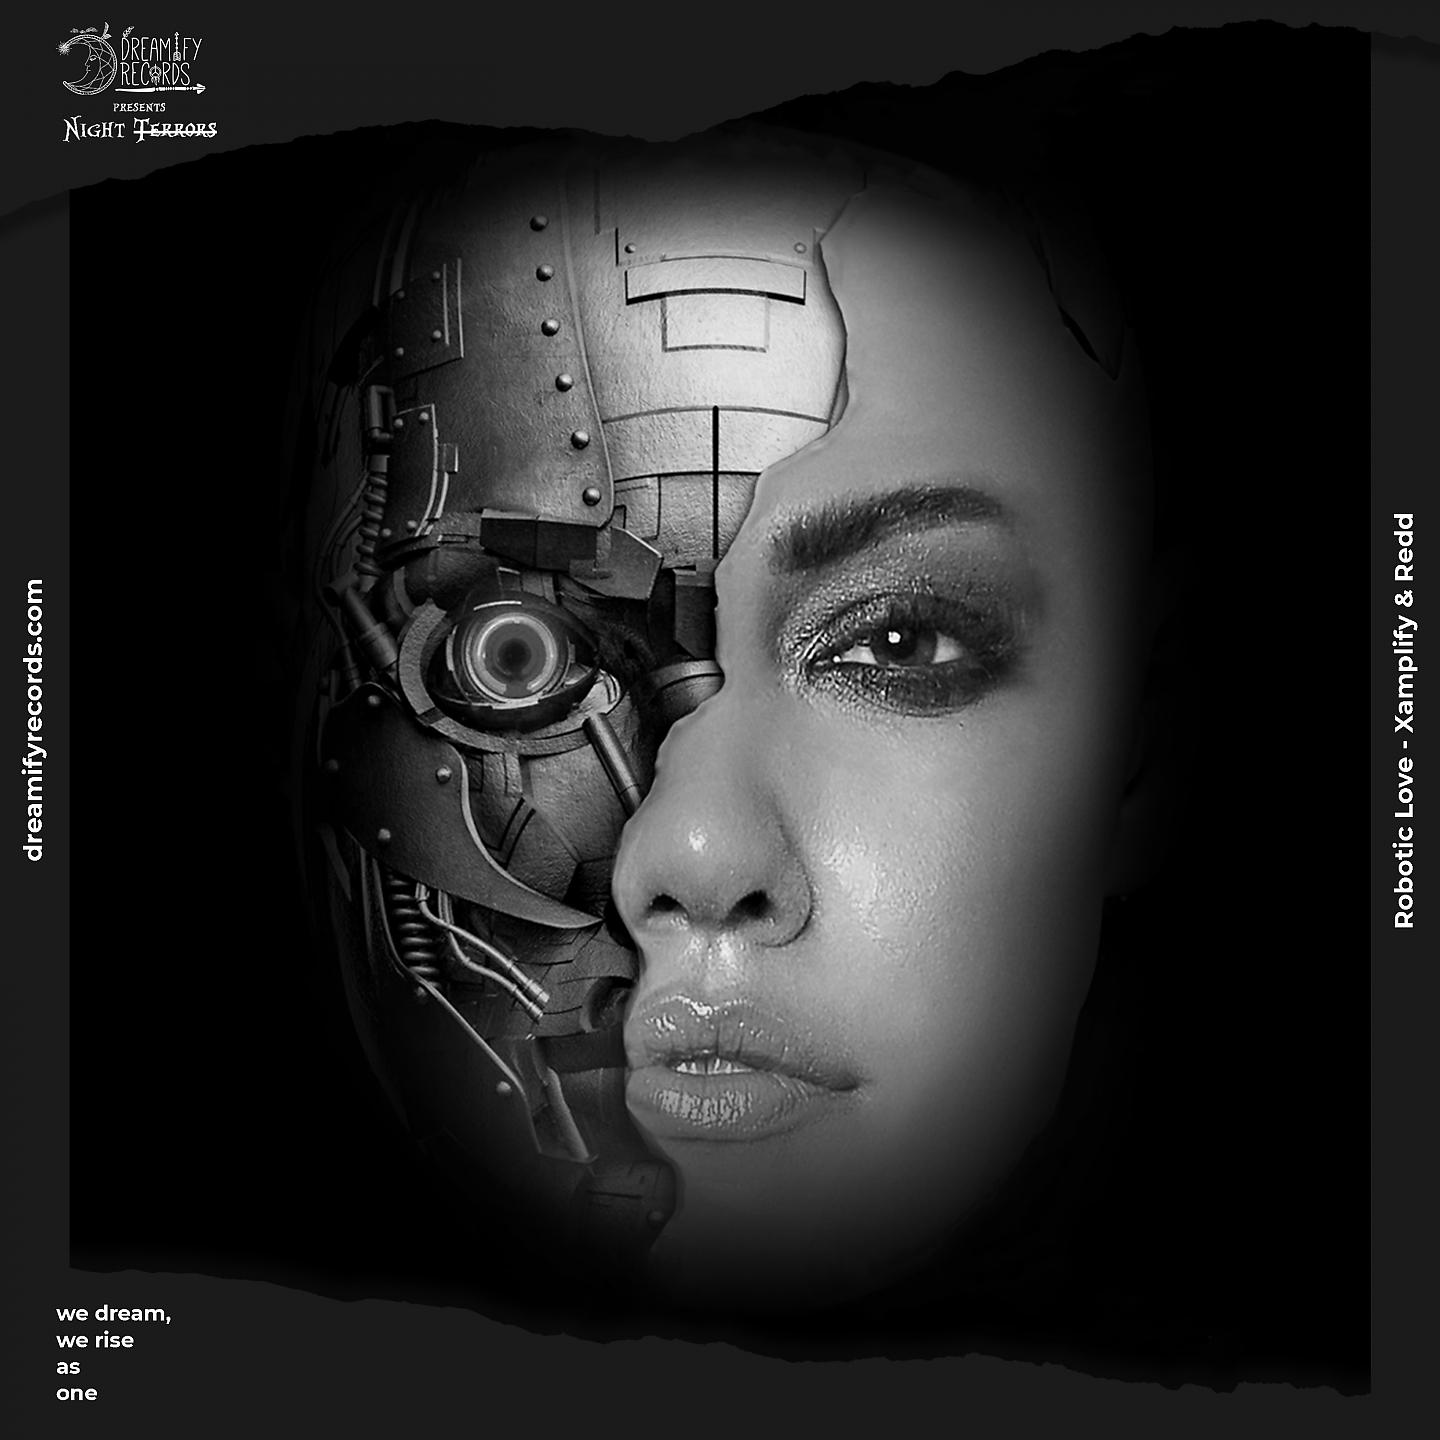 Постер альбома Robotic Love